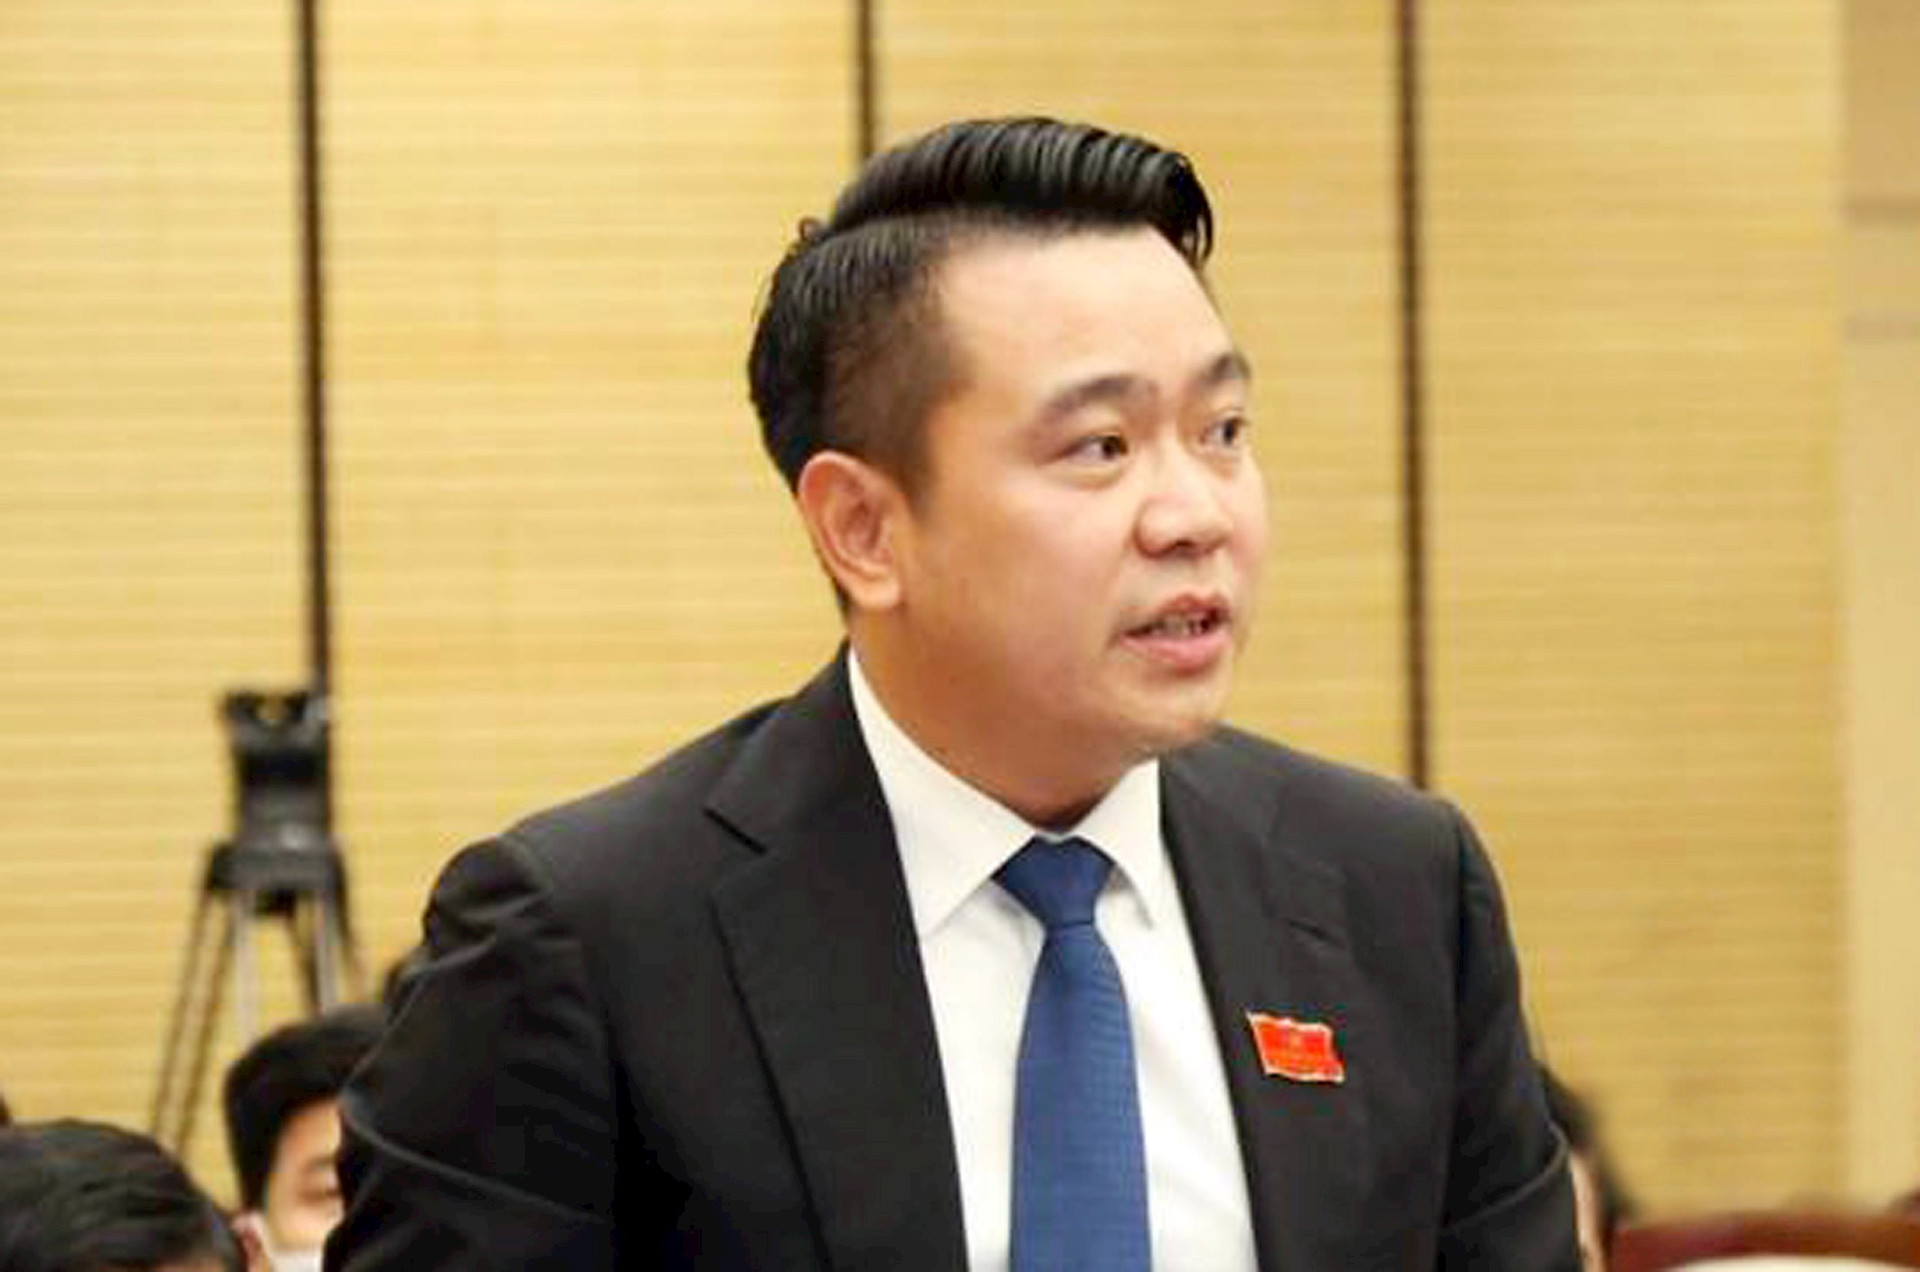 Tổng giám đốc Tập đoàn Tân Á Đại Thành Nguyễn Duy Chính: ‘Doanh nghiệp trông đợi những bước chuyển về cải cách hành chính gắn với chuyển đổi số’ tại kỳ họp thứ 12 HĐND thành phố Hà Nội